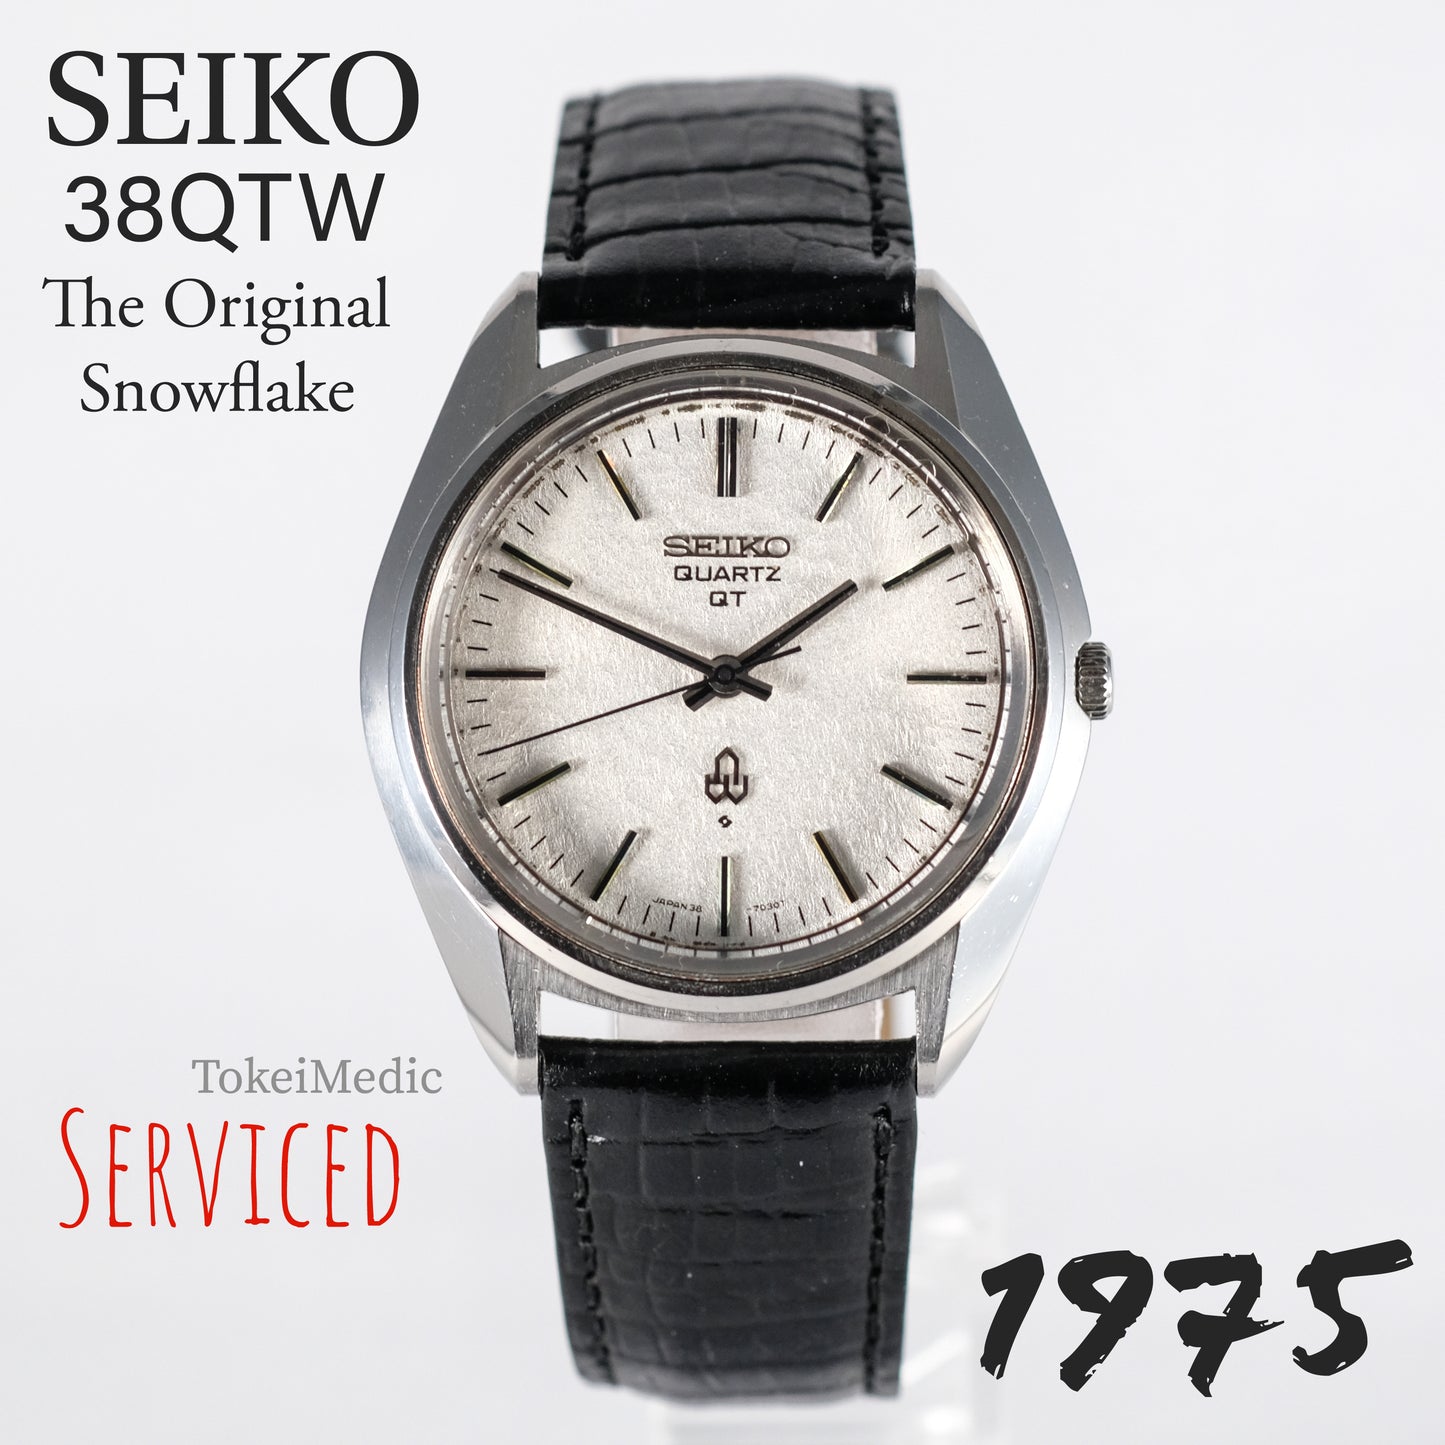 1975 Seiko Quartz 38QTW 38-7030